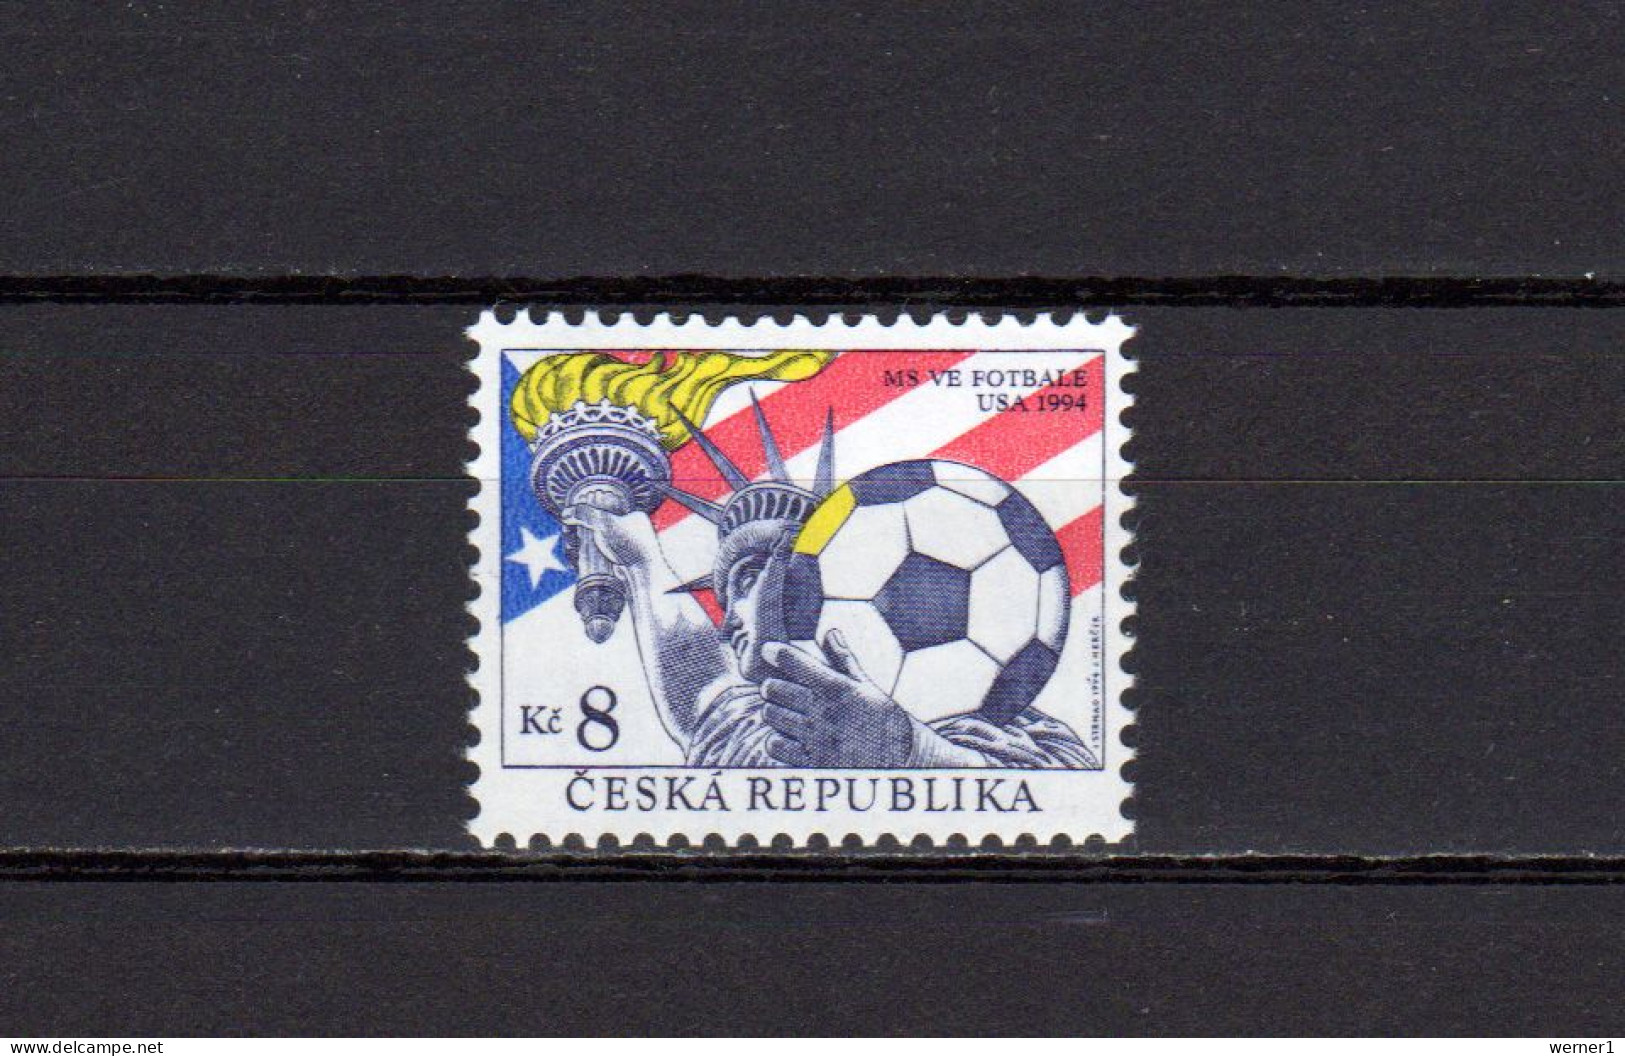 Czech Republic 1994 Football Soccer World Cup Stamp MNH - 1994 – Verenigde Staten